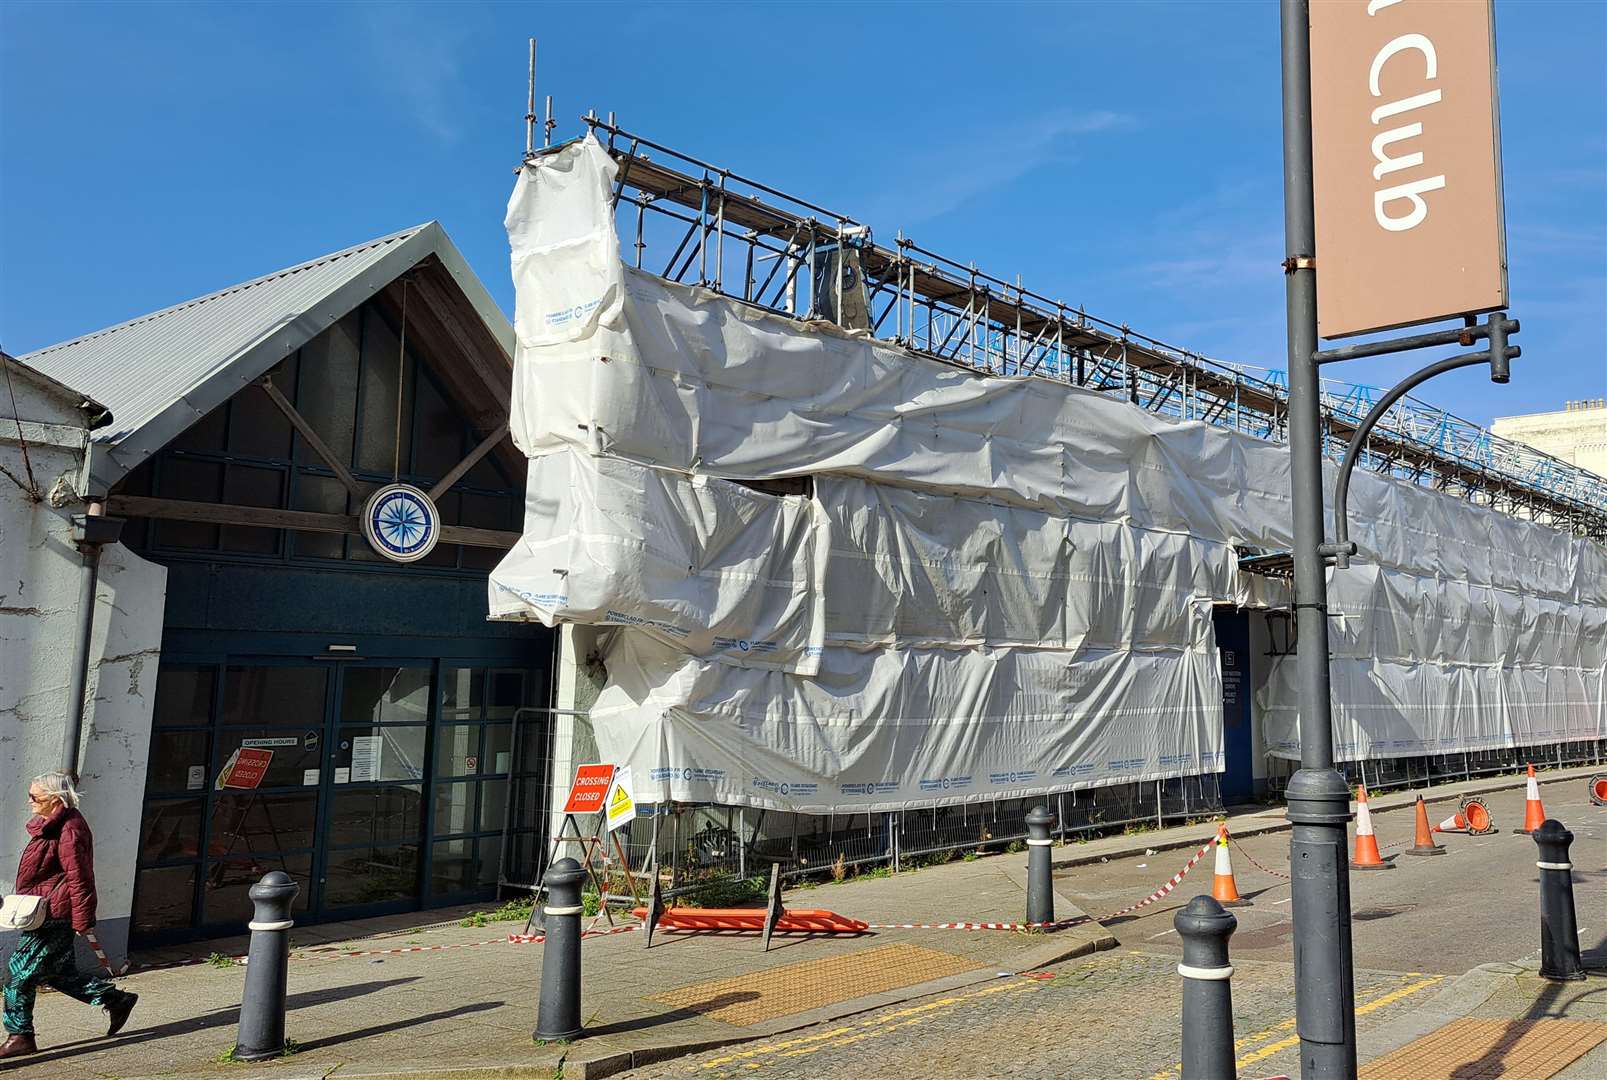 Tarpaulin has been erected around the building in Dover